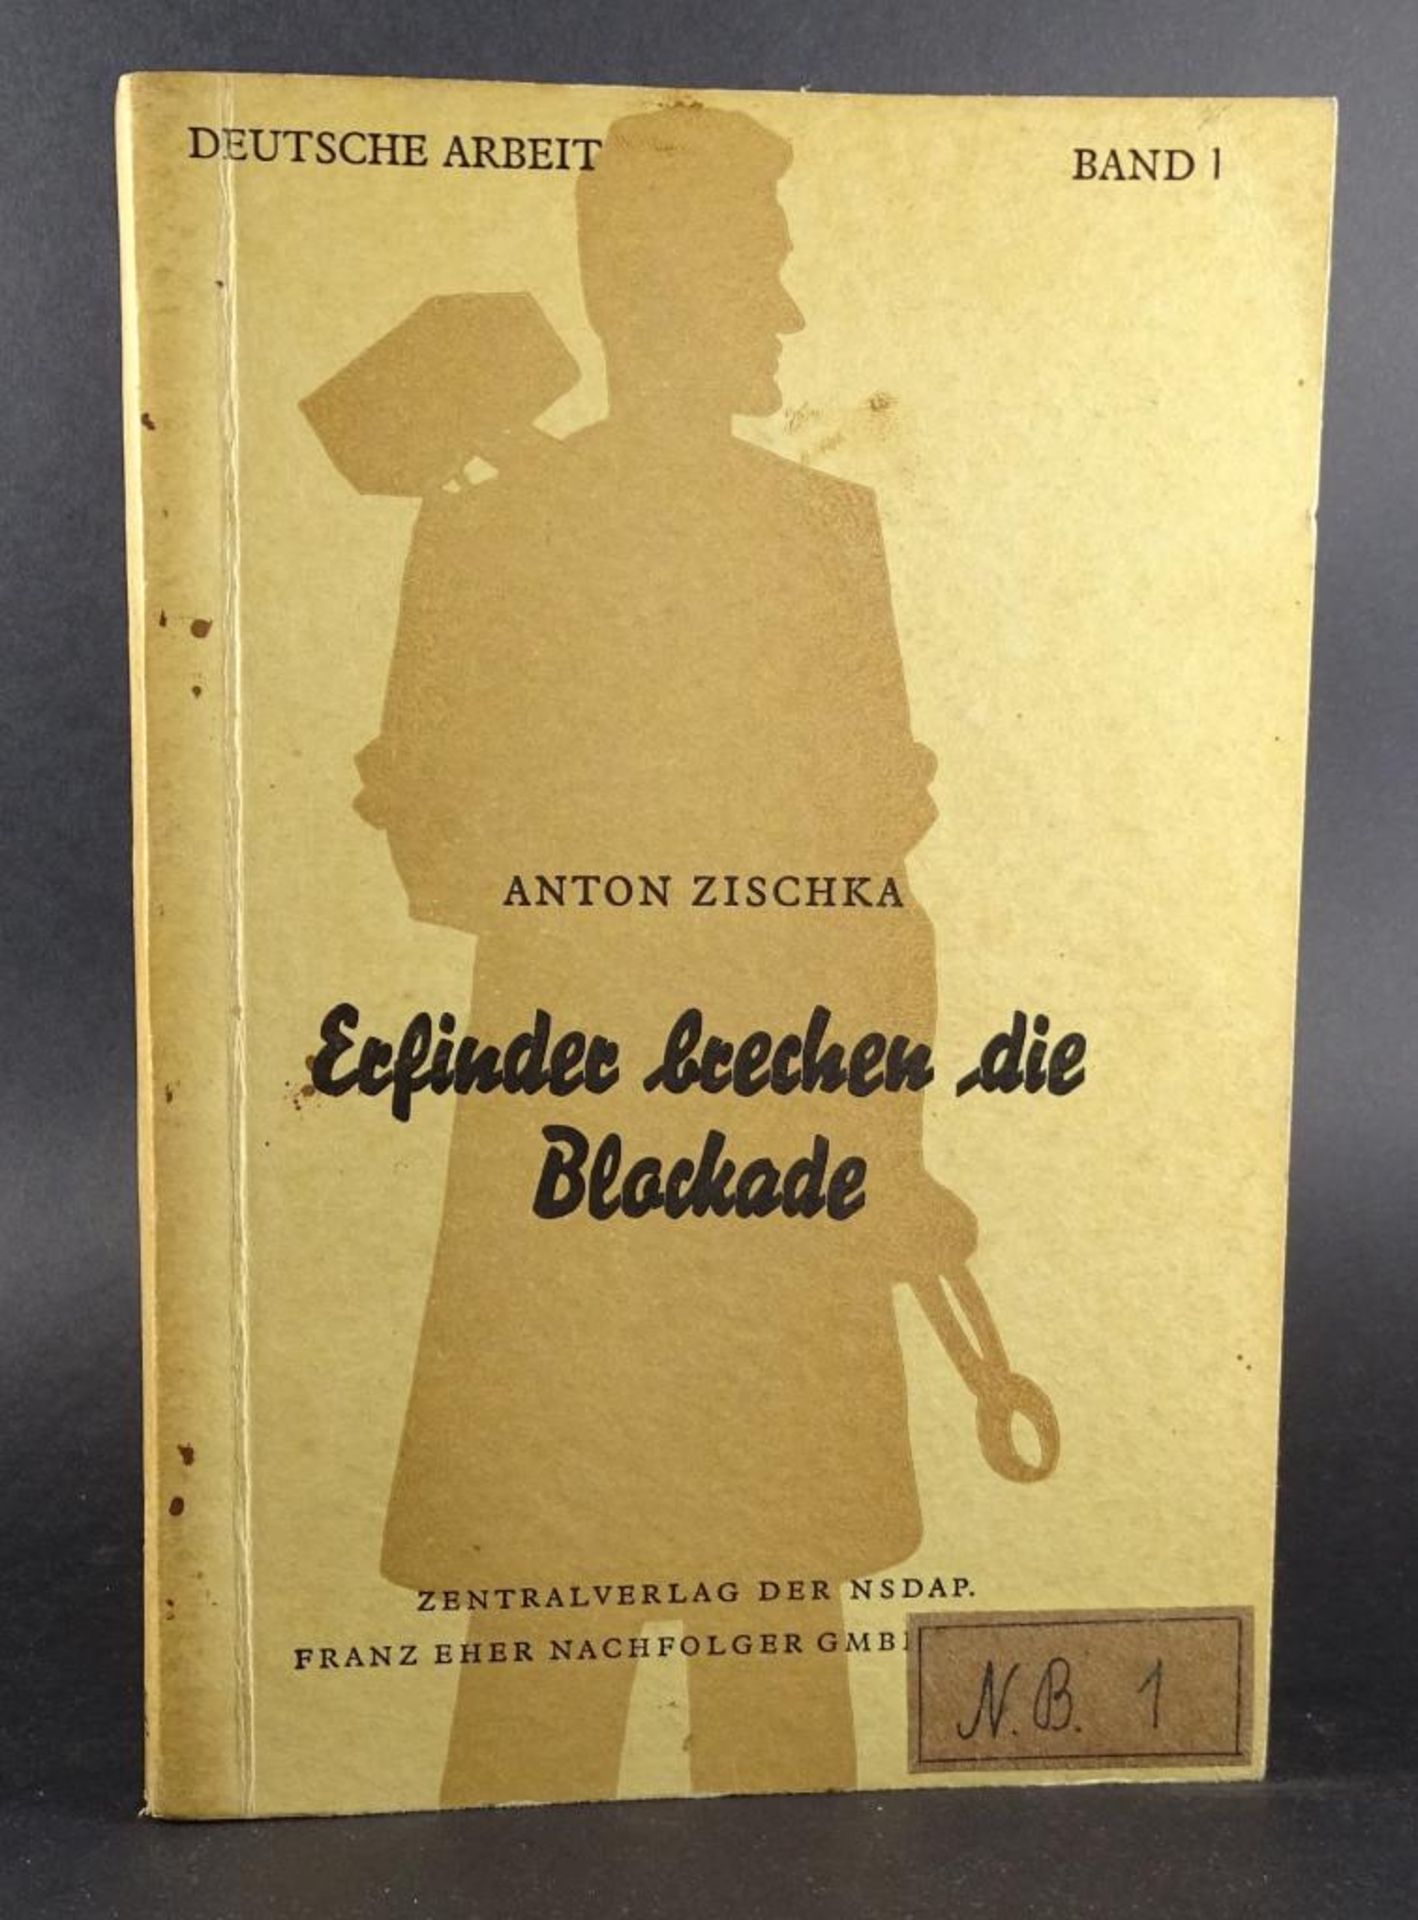 "Erfinder brechen die Blockade", Anton Zischka, Zentralverlag der NSDAP,Band I